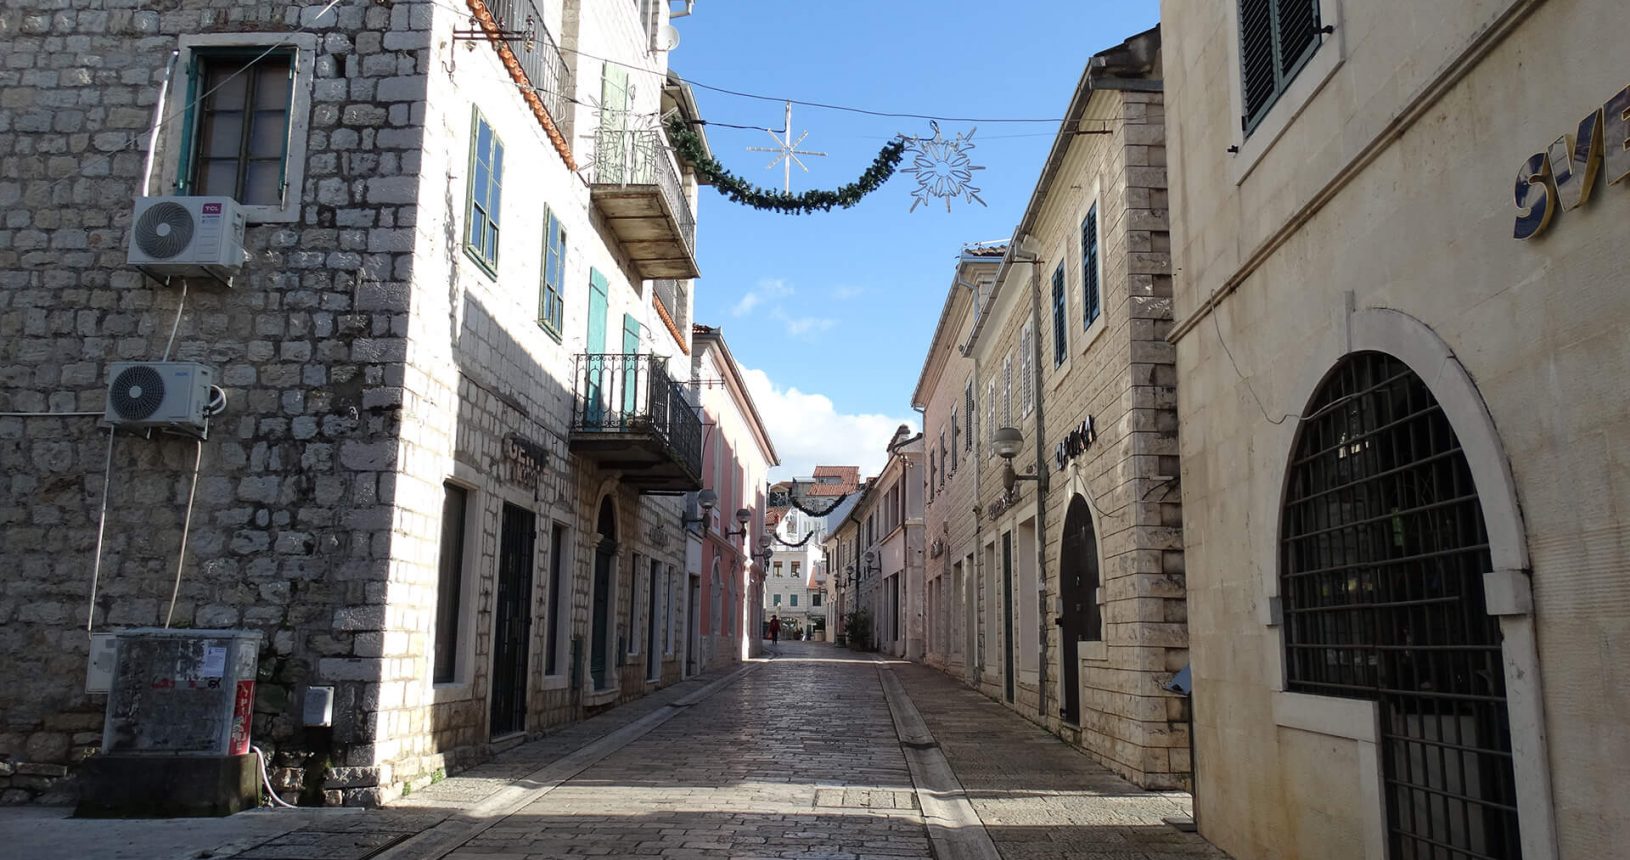 Cozy streets in Herceg Novi